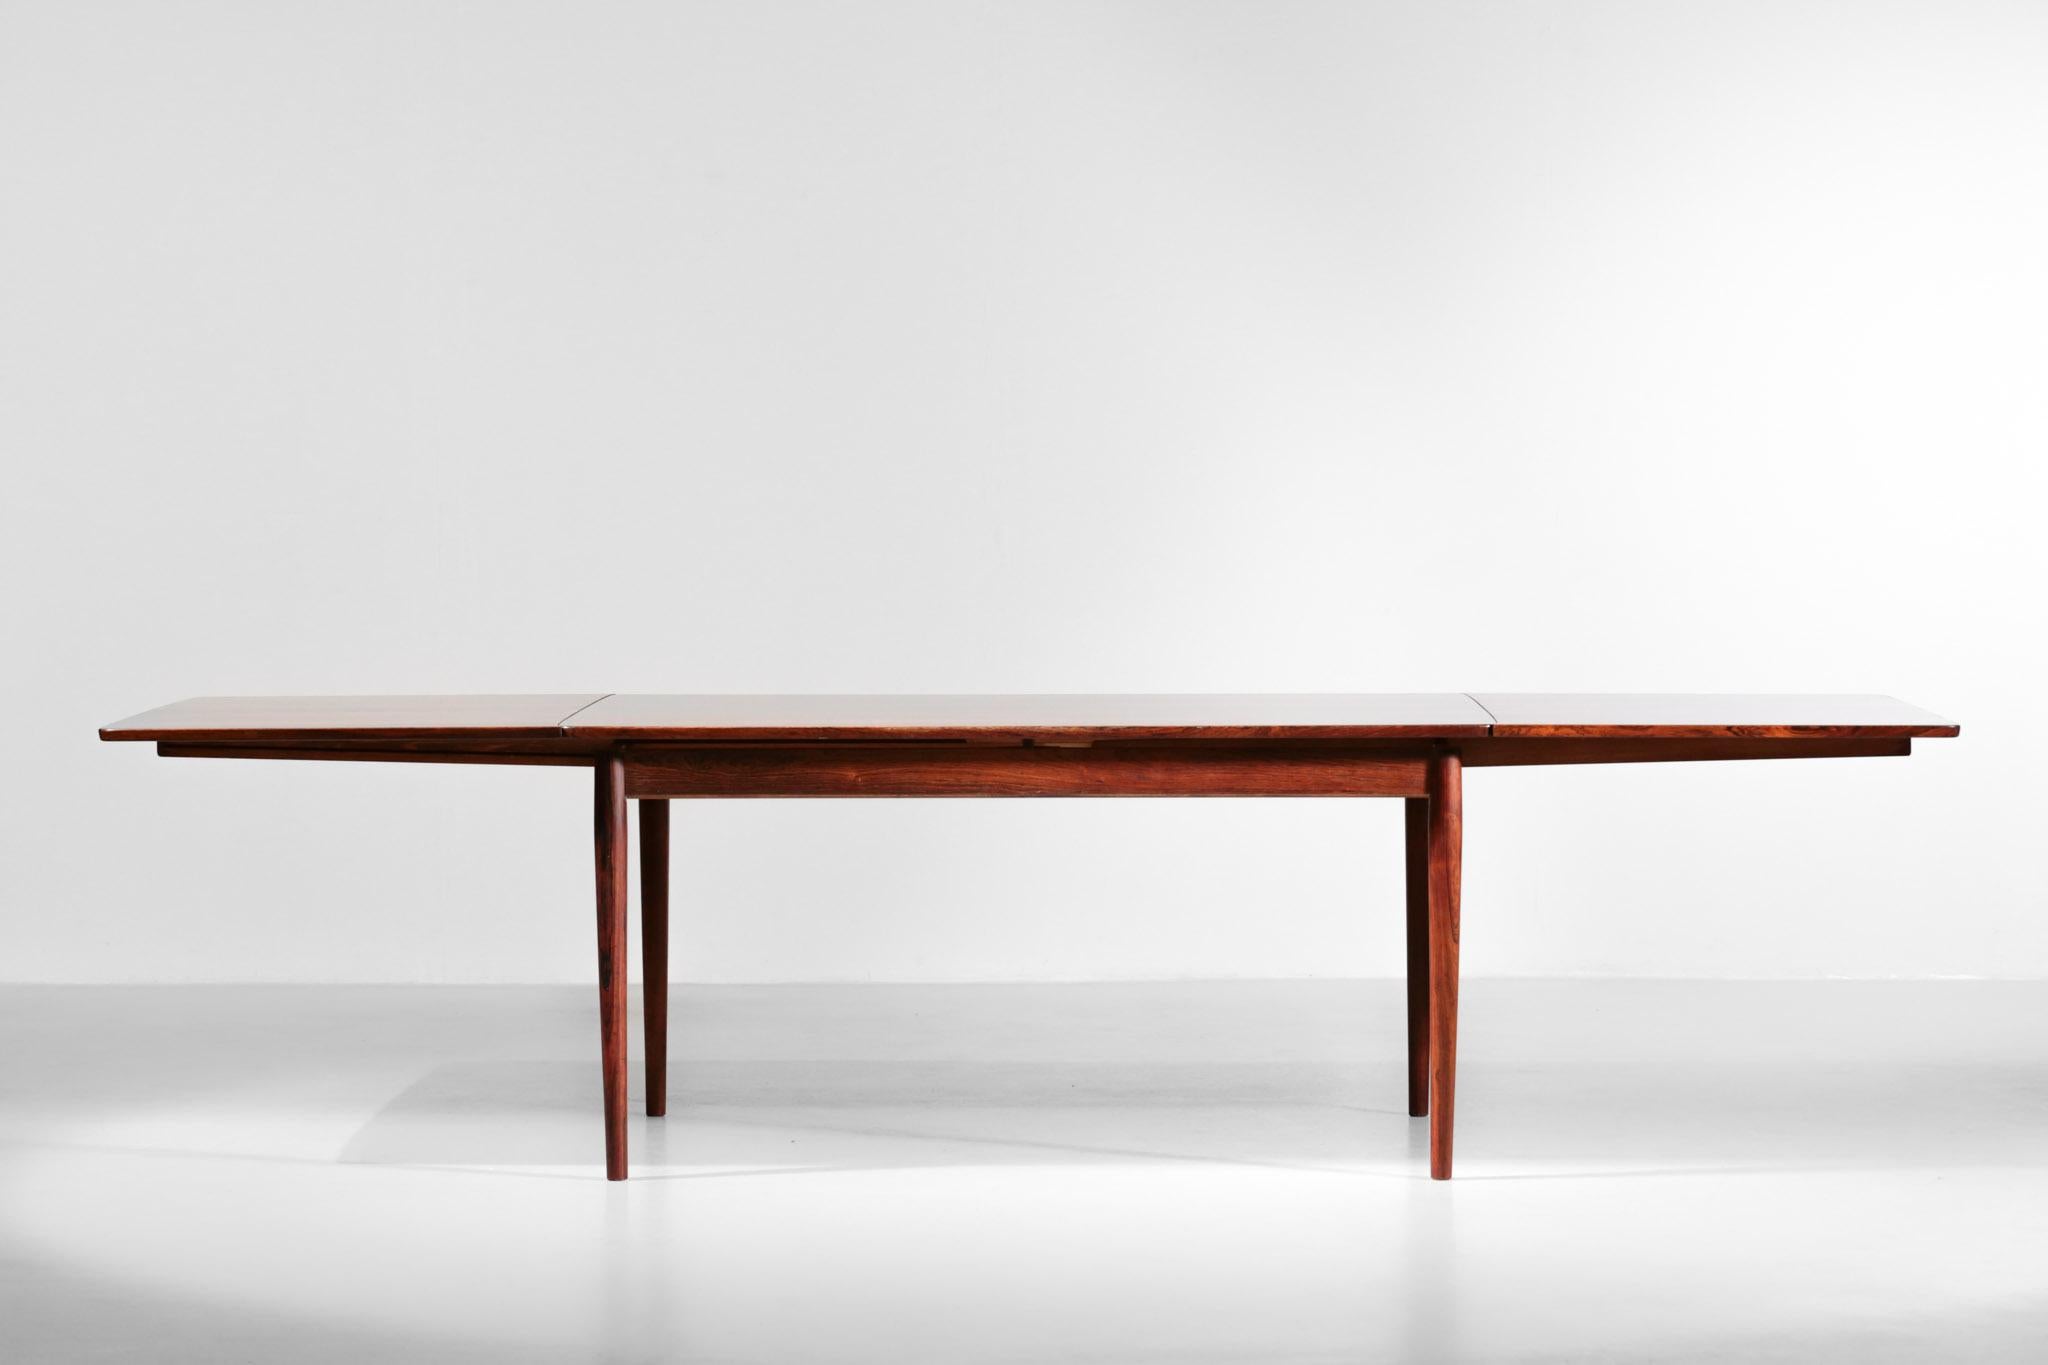 Grande table de salle à manger scandinave des années 60 conçue par le designer danois Arne Vodder pour Sibast. Structure en bois massif et placage, avec un beau veinage flammé. La table dispose de 2 rallonges à l'extrémité pour doubler la surface du